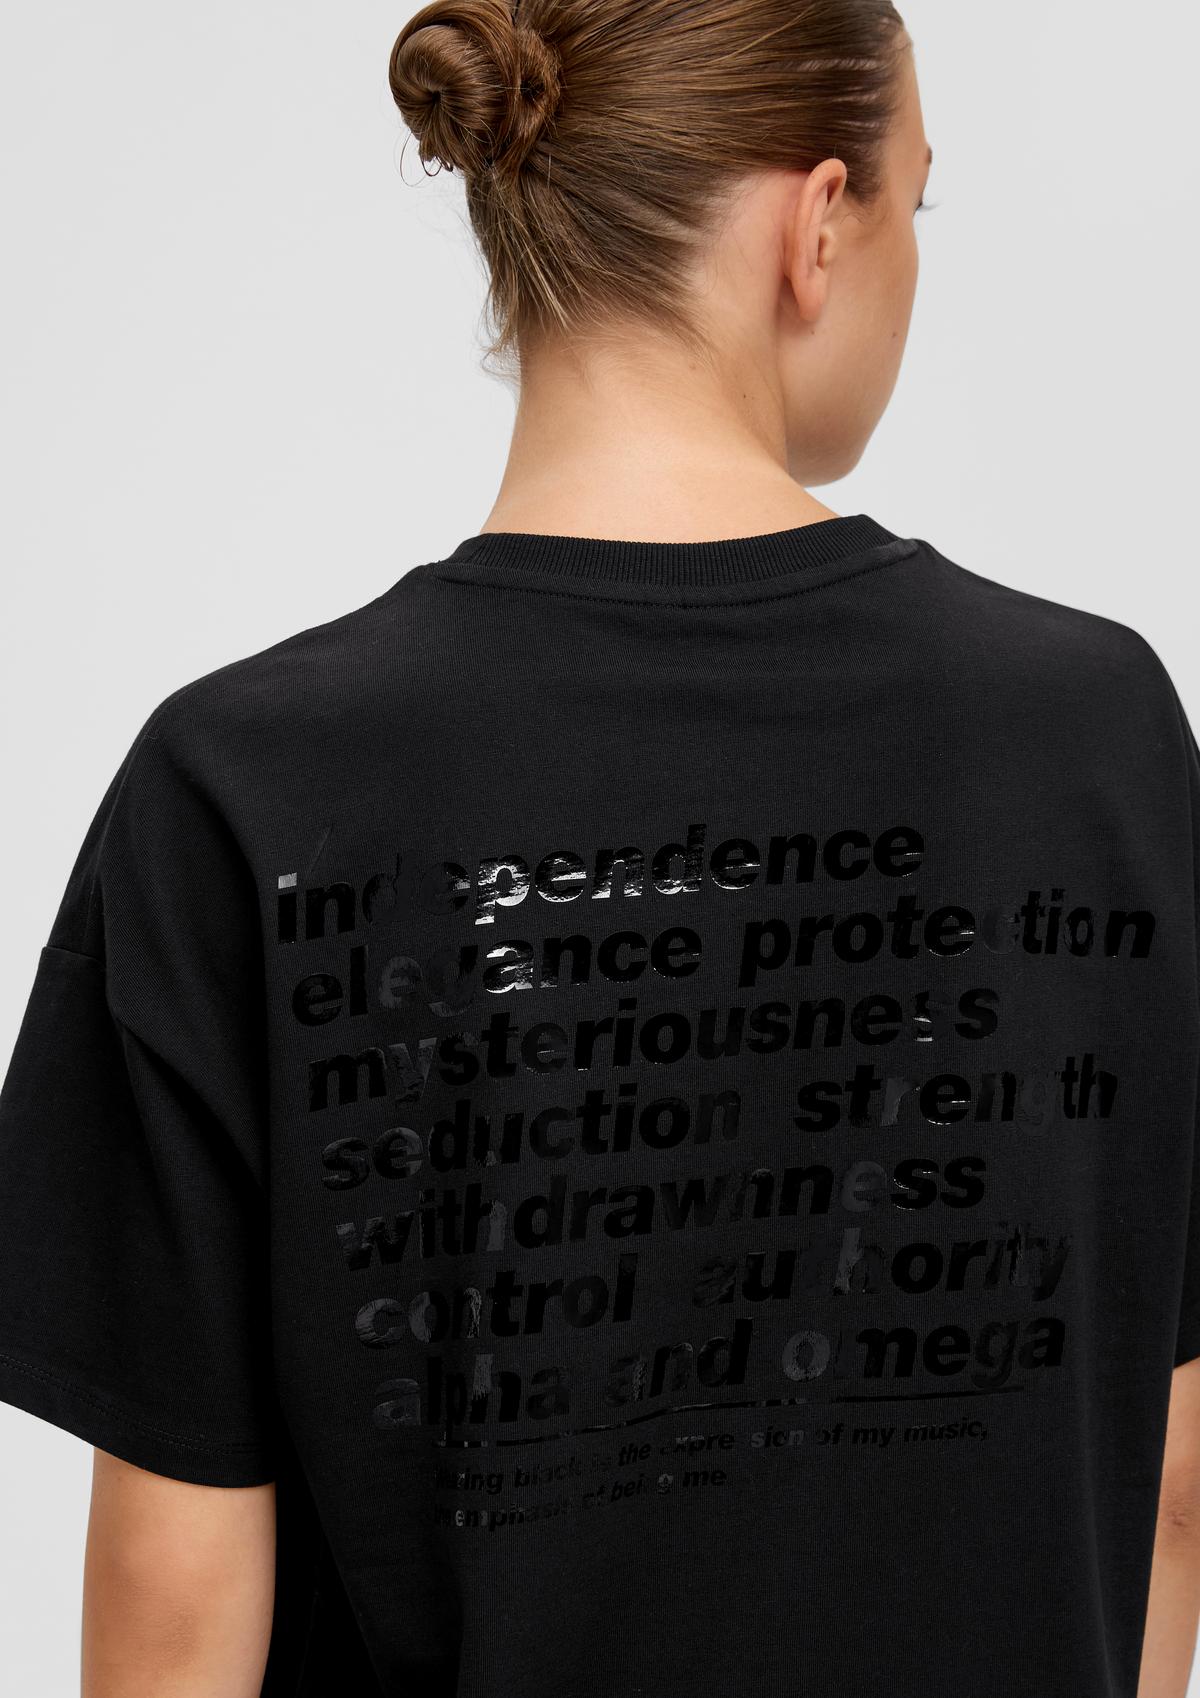 ELIF QS x mit Rückenprint Baumwoll-Shirt schwarz - |